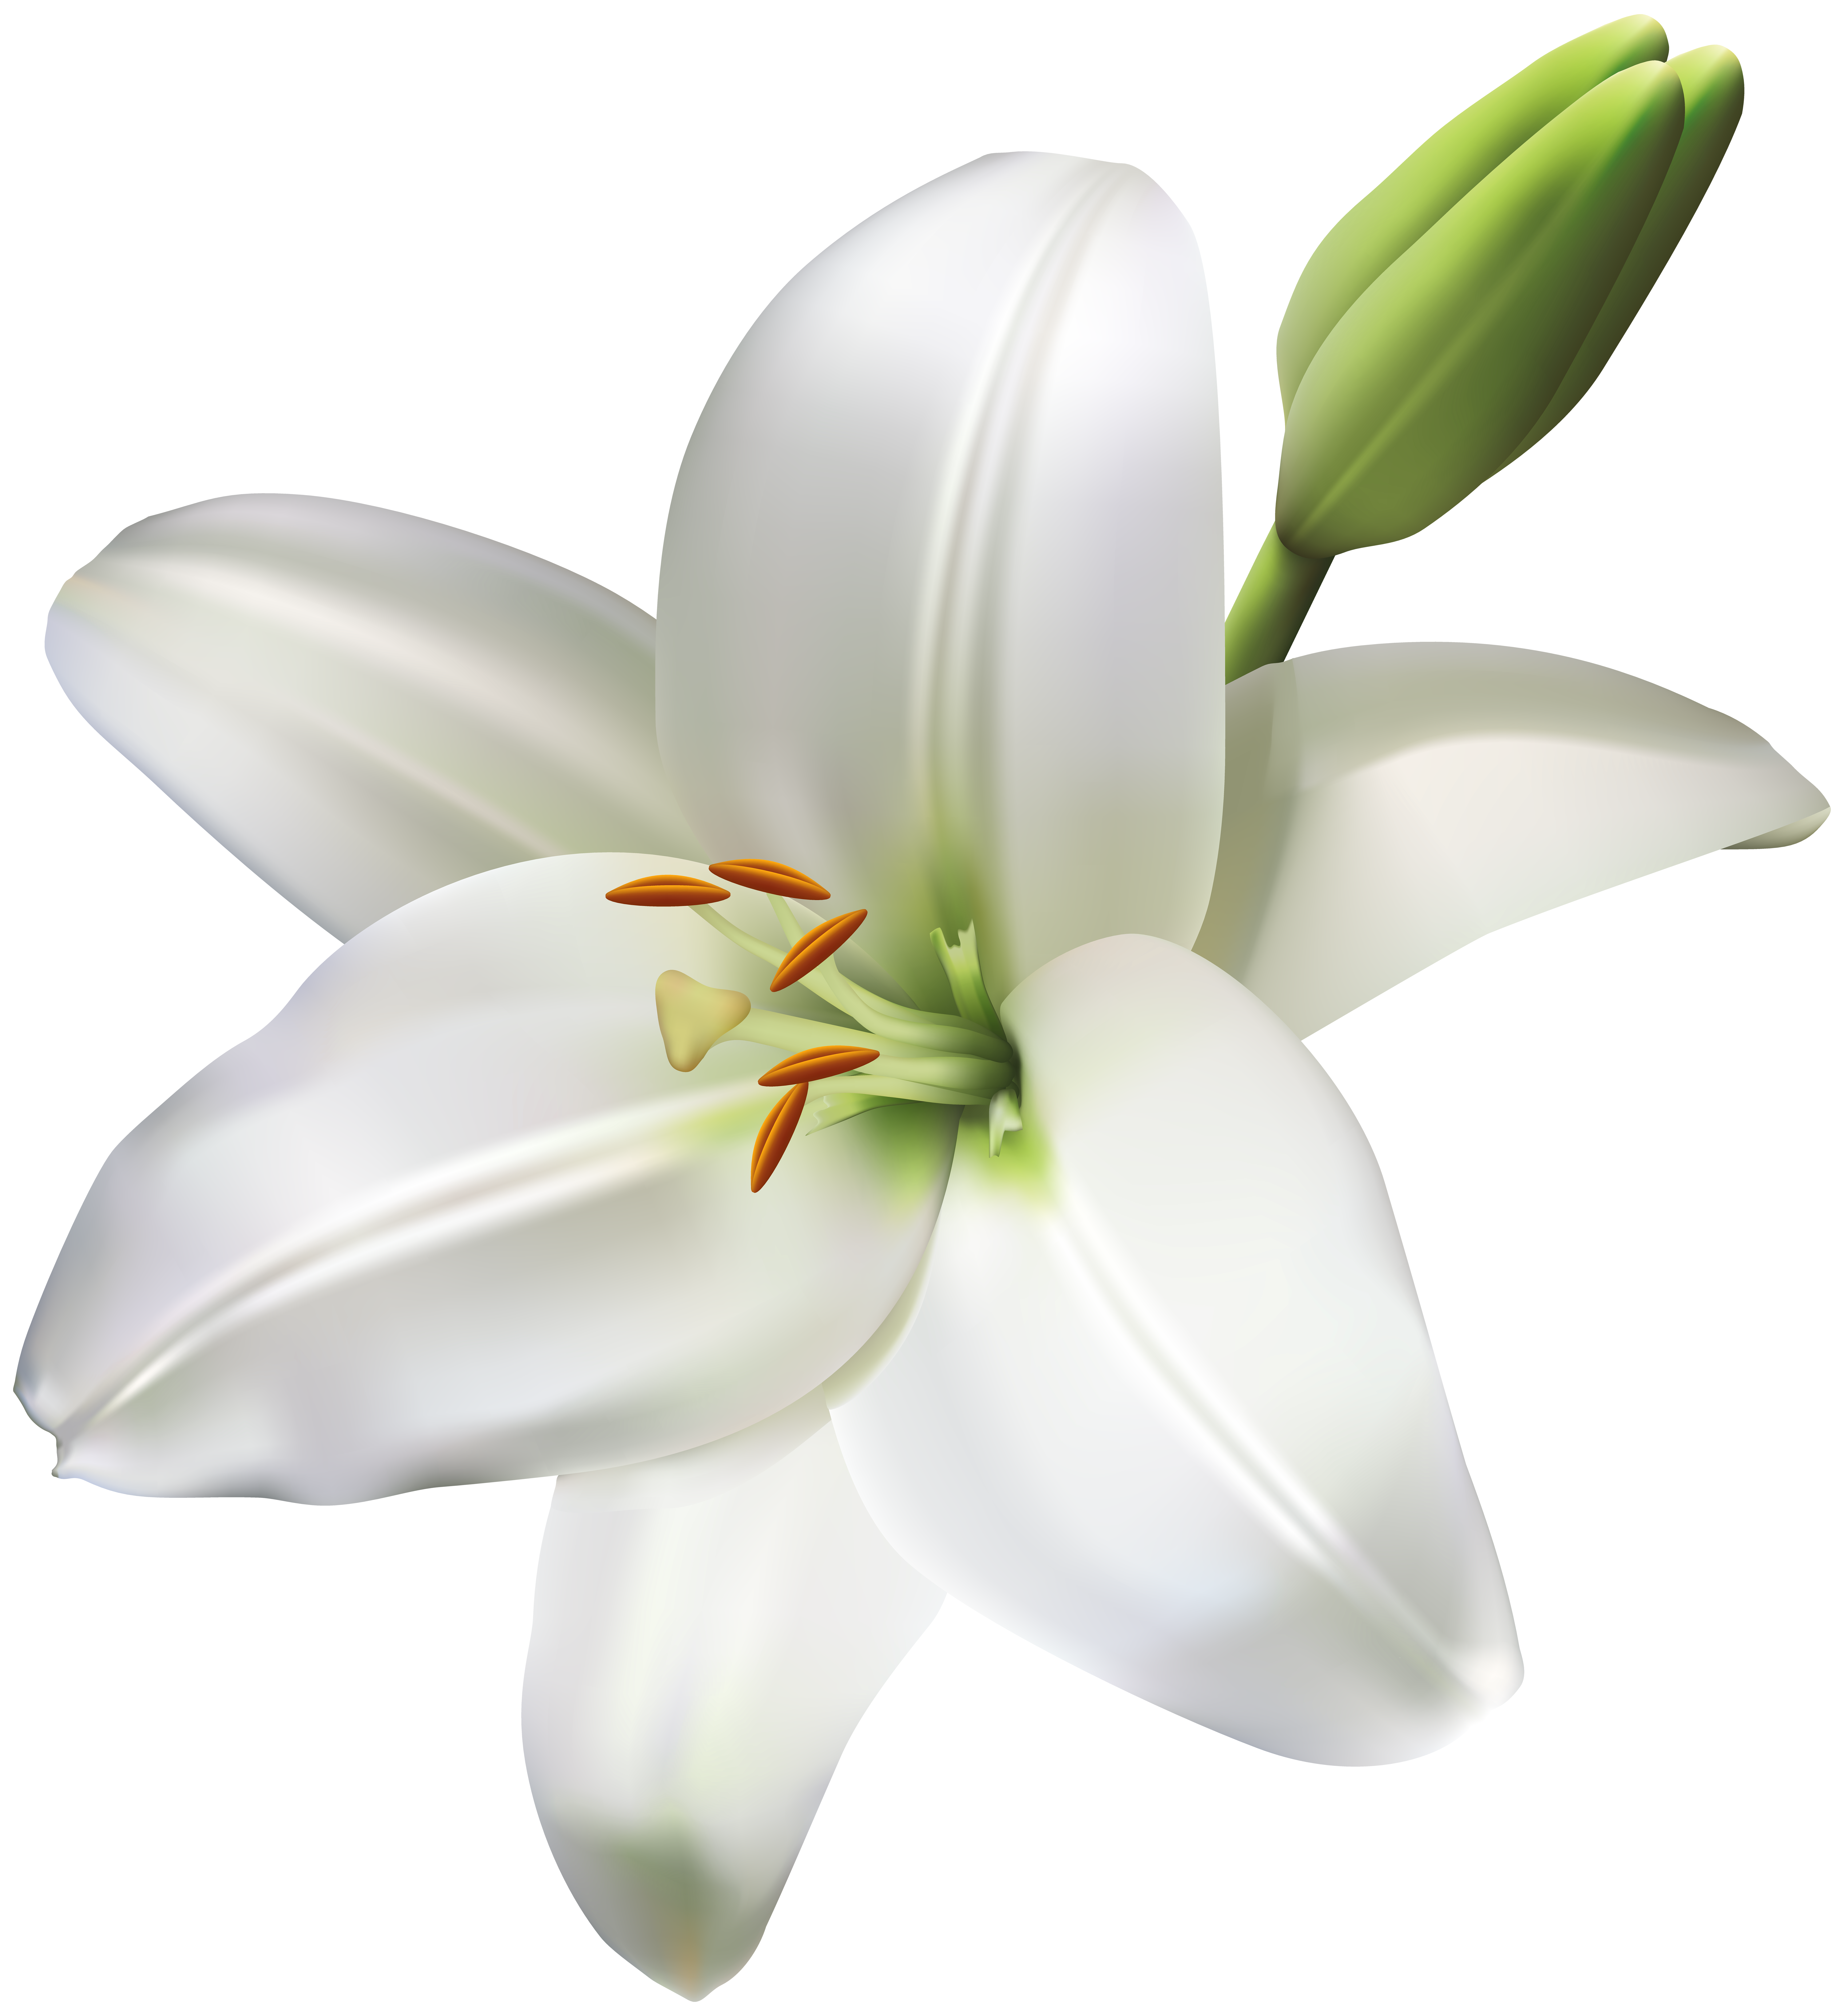 Life clipart white flower, Life white flower Transparent ...